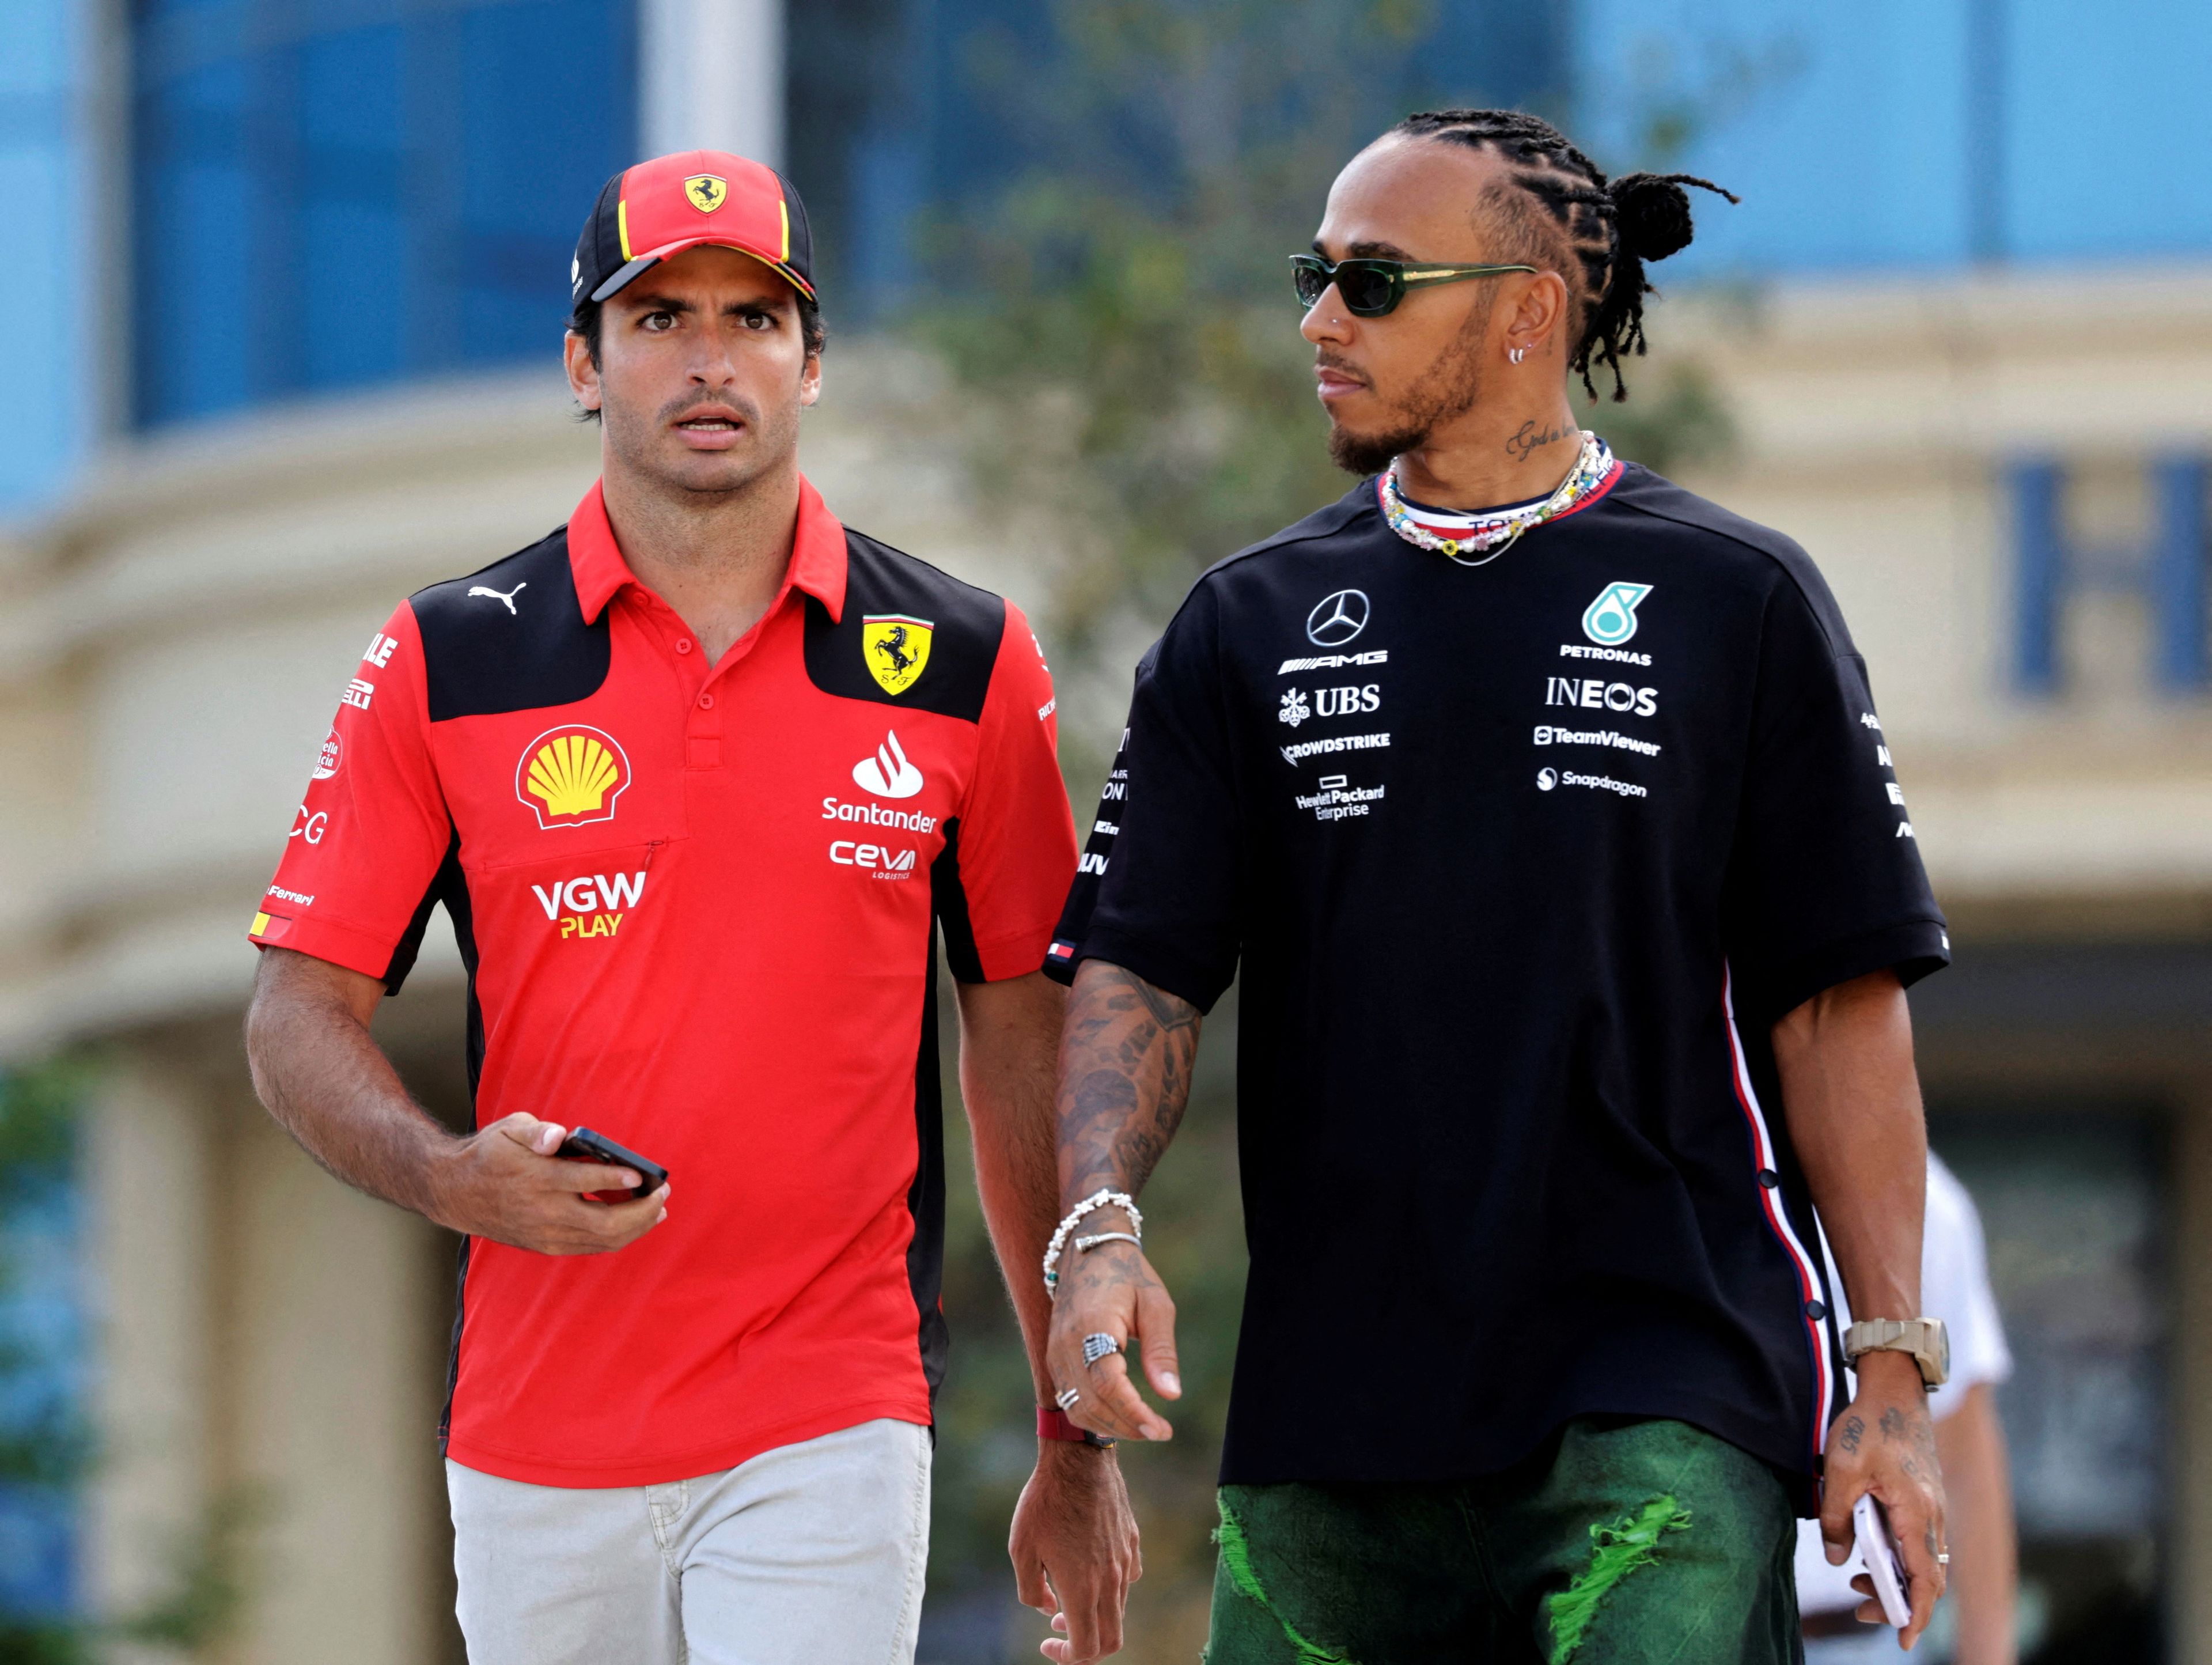 La foto del día: Ferrari anunció ayer el fichaje de Lewis Hamilton a partir de la próxima temporada, en un cambio de aires sorprendente en la F-1. Carlos Sainz no renovará con el equipo italiano y tendrá que cambiar de equipo para seguir en la parrilla.